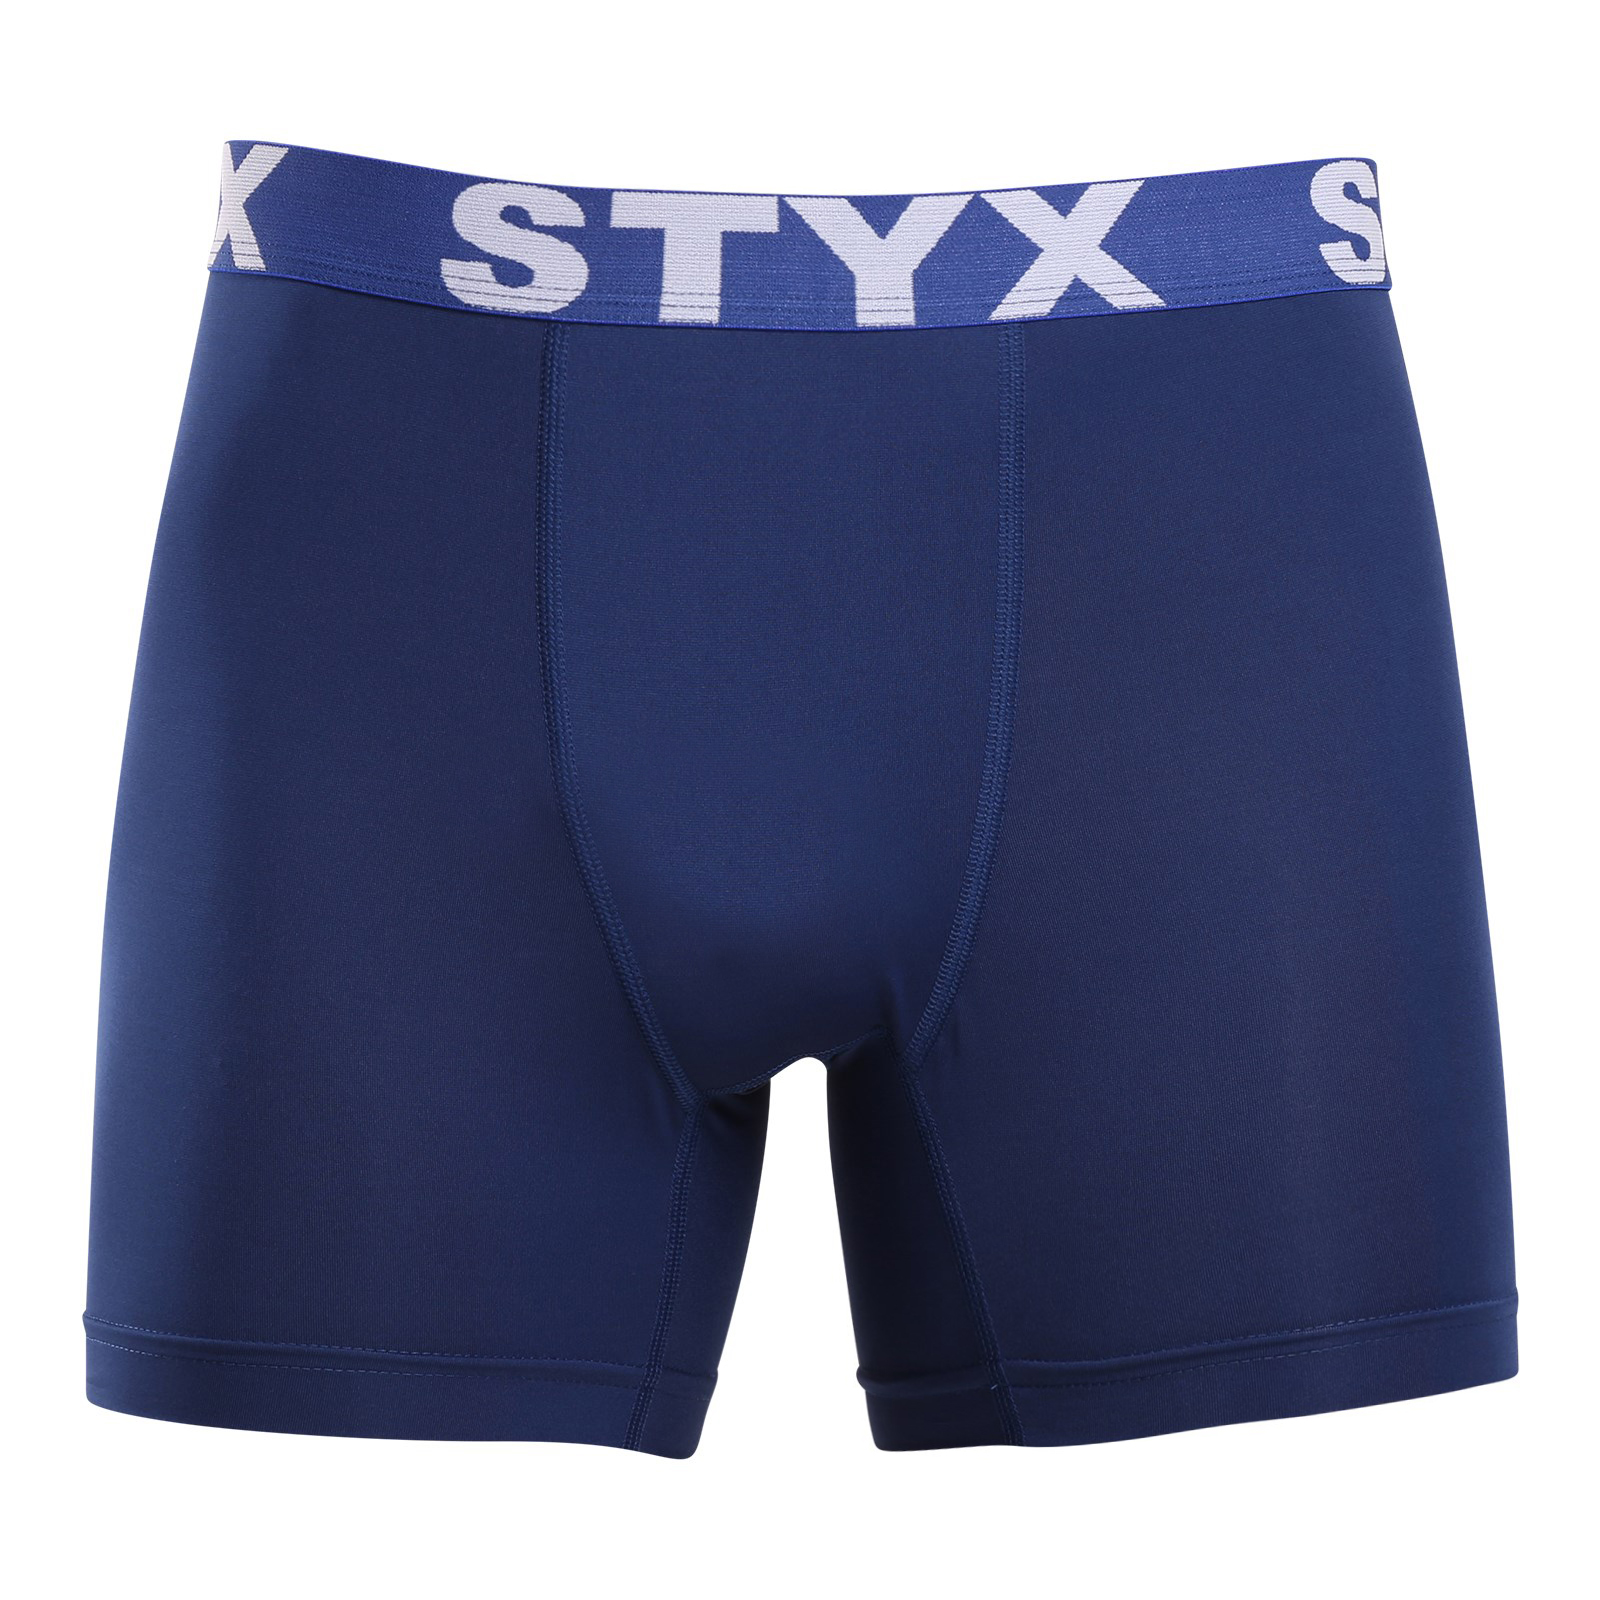 Levně Pánské funkční boxerky Styx tmavě modré (W968) XXL